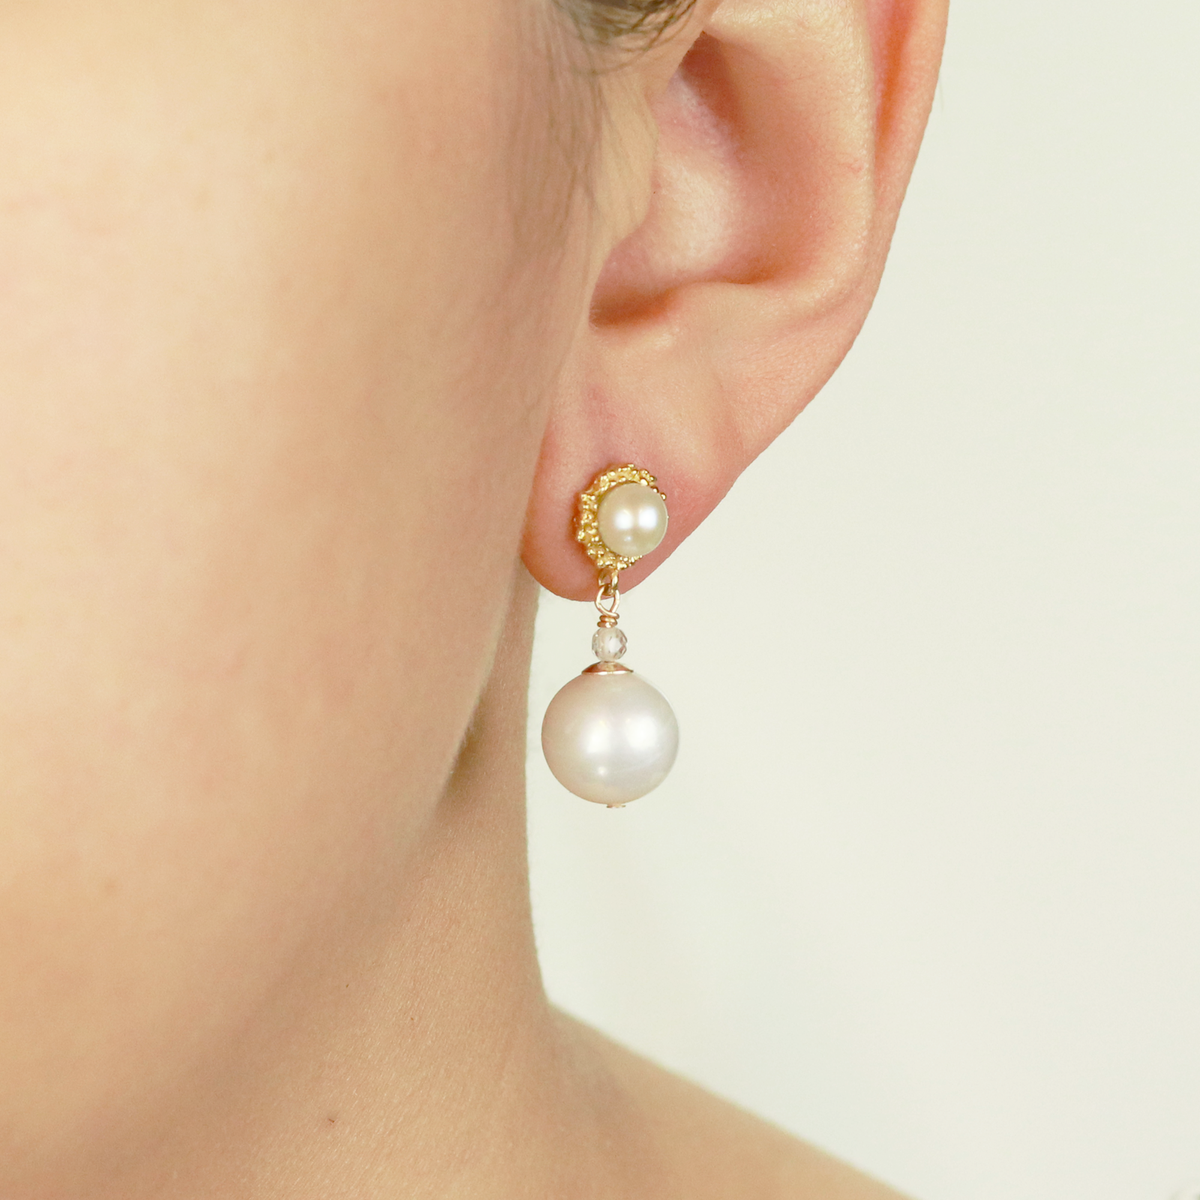 Textured Settings & Pearl Drop Earrings